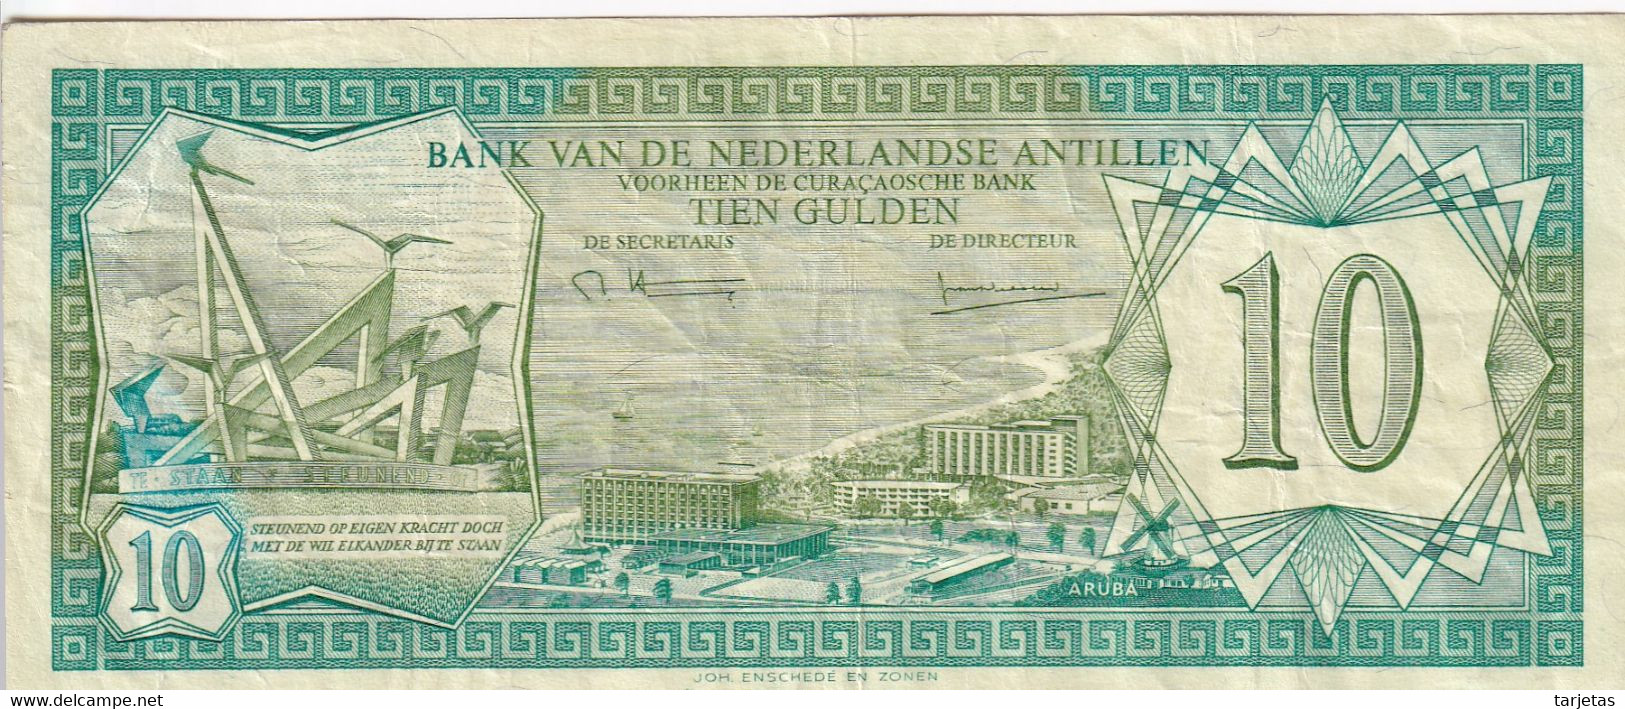 BILLETE DE CURAÇAO DE 10 GULDEN DEL AÑO 1979  (BANK NOTE) - Niederländische Antillen (...-1986)